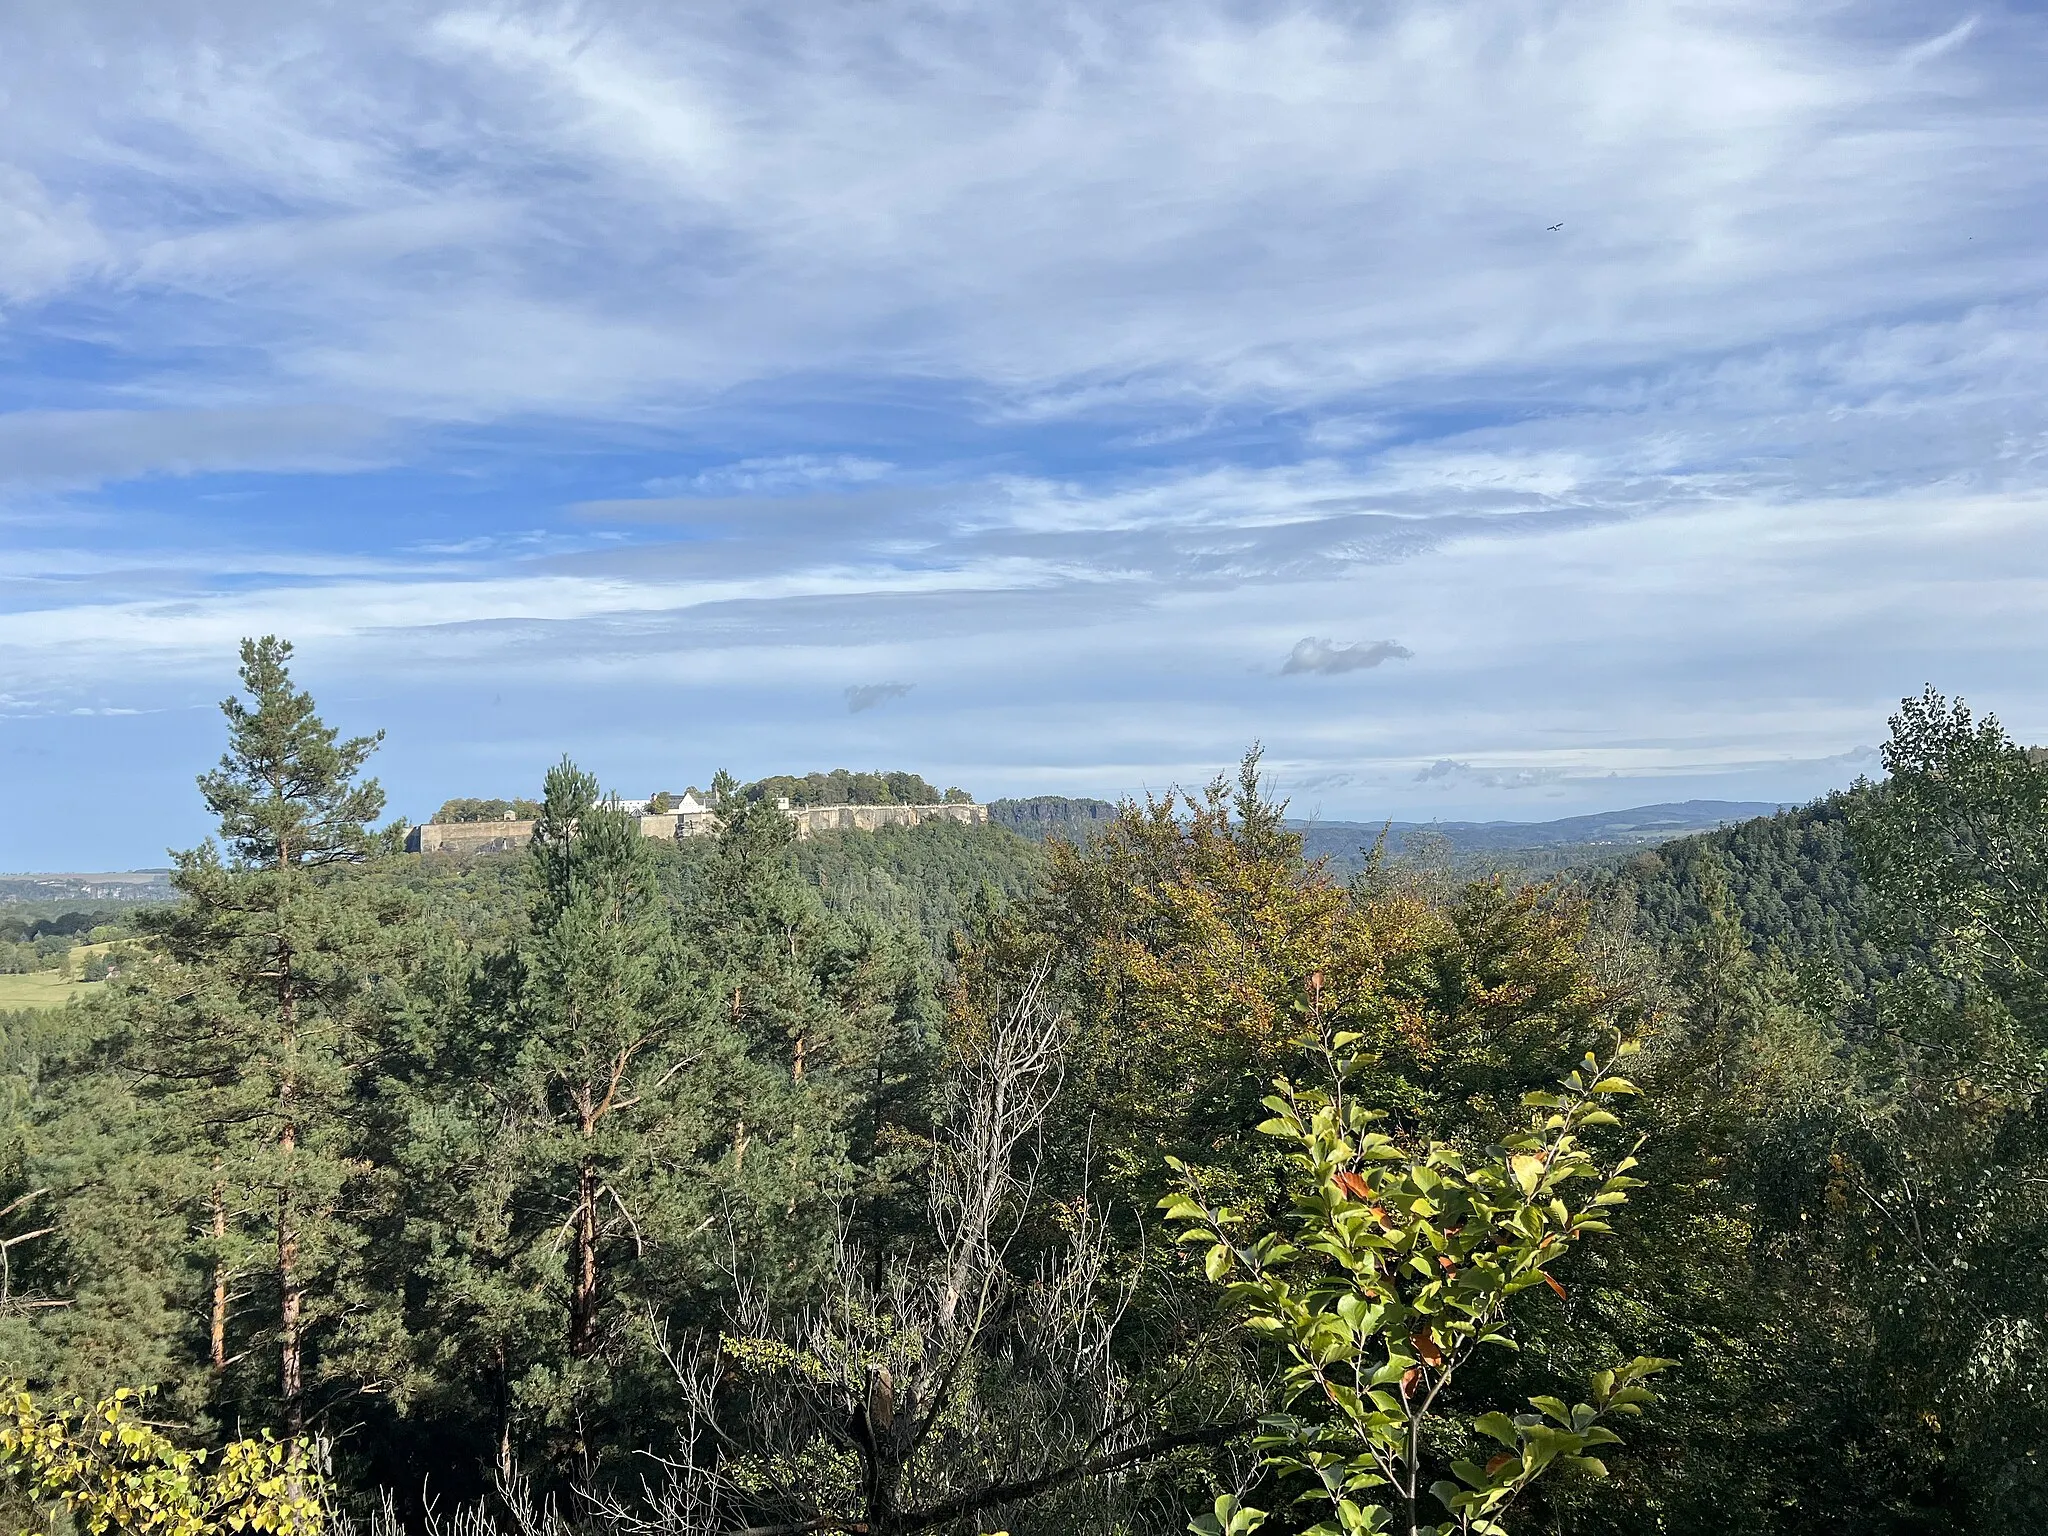 Photo showing: Aussicht vom Spanghorn in Königstein, Landkreis Sächsische Schweiz, Sachsen, Deutschland. Das Spanghorn ist ein 314 Meter Sandsteinfelsen im Landschaftsschutzgebiet Sächsische Schweiz.